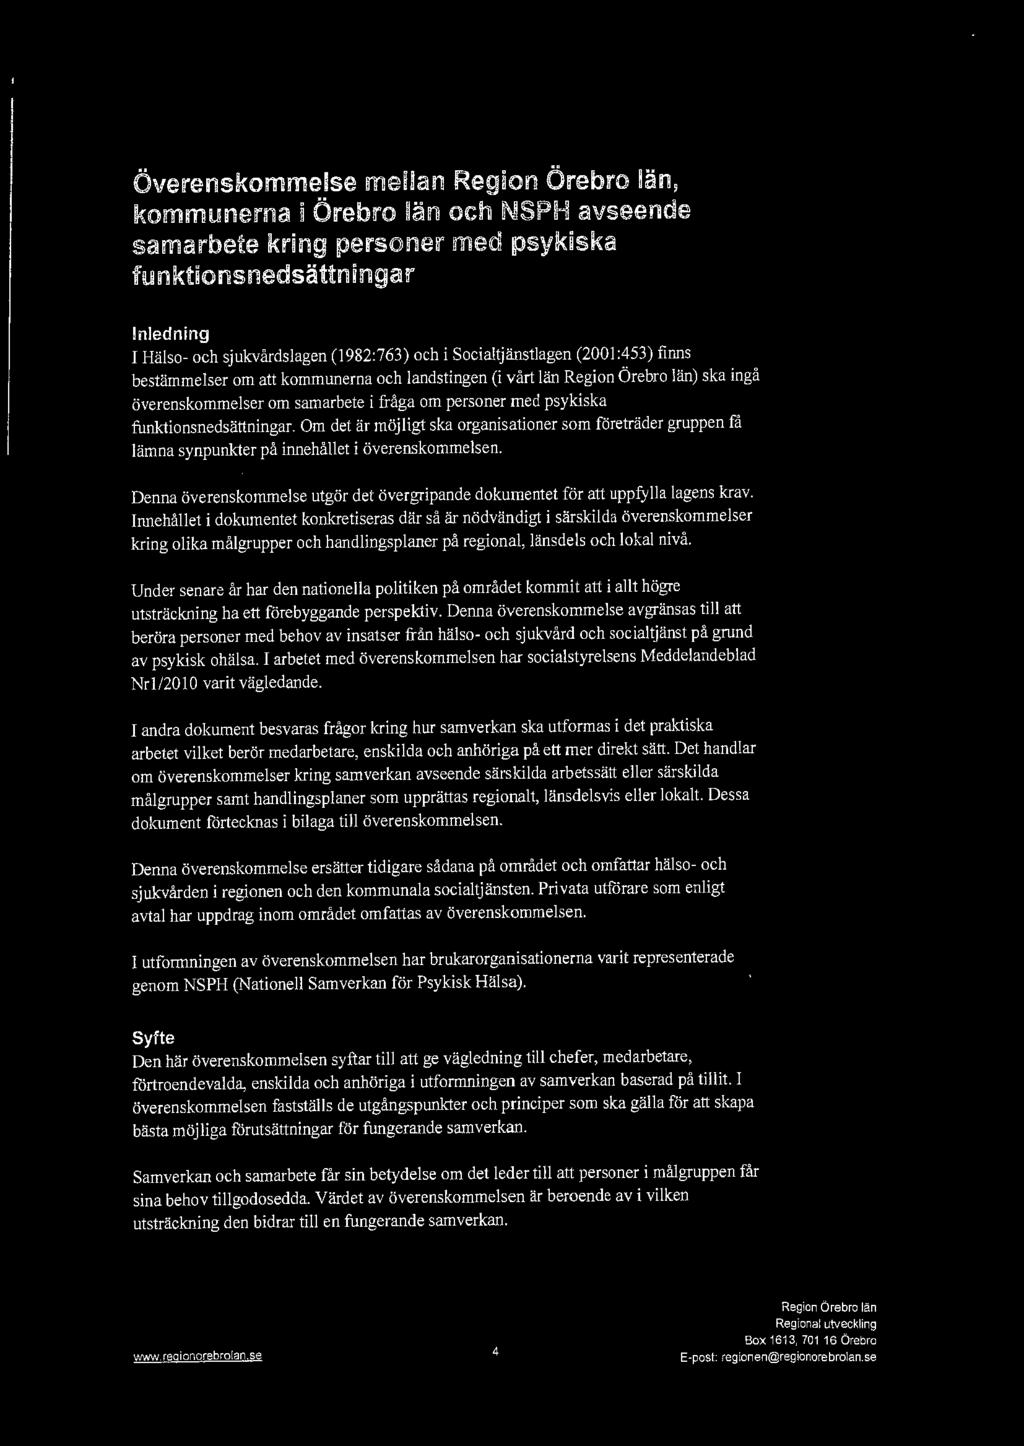 Överenskommelse mellan, kommunerna i Örebro län och NSPH avseende samarbete kring personer med psykiska funktionsnedsättningar Inledning I Hälso- och sjukvårdslagen (1982:763) och i Socialtjänstlagen